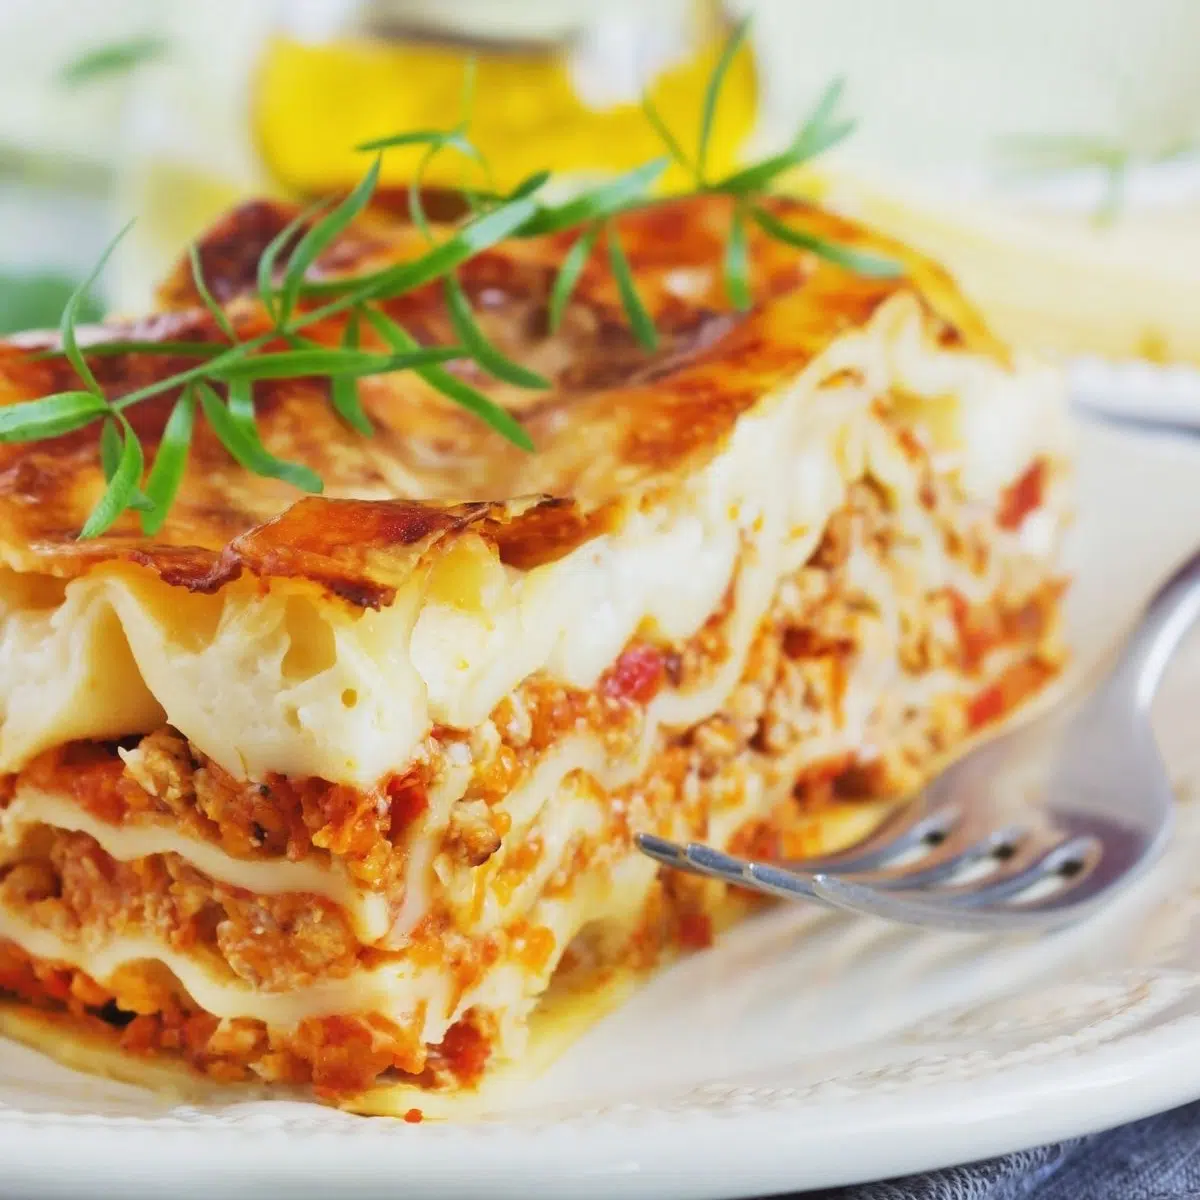 Imej segi empat sama lasagna daging yang dihiris dengan sos merah di atas pinggan putih.